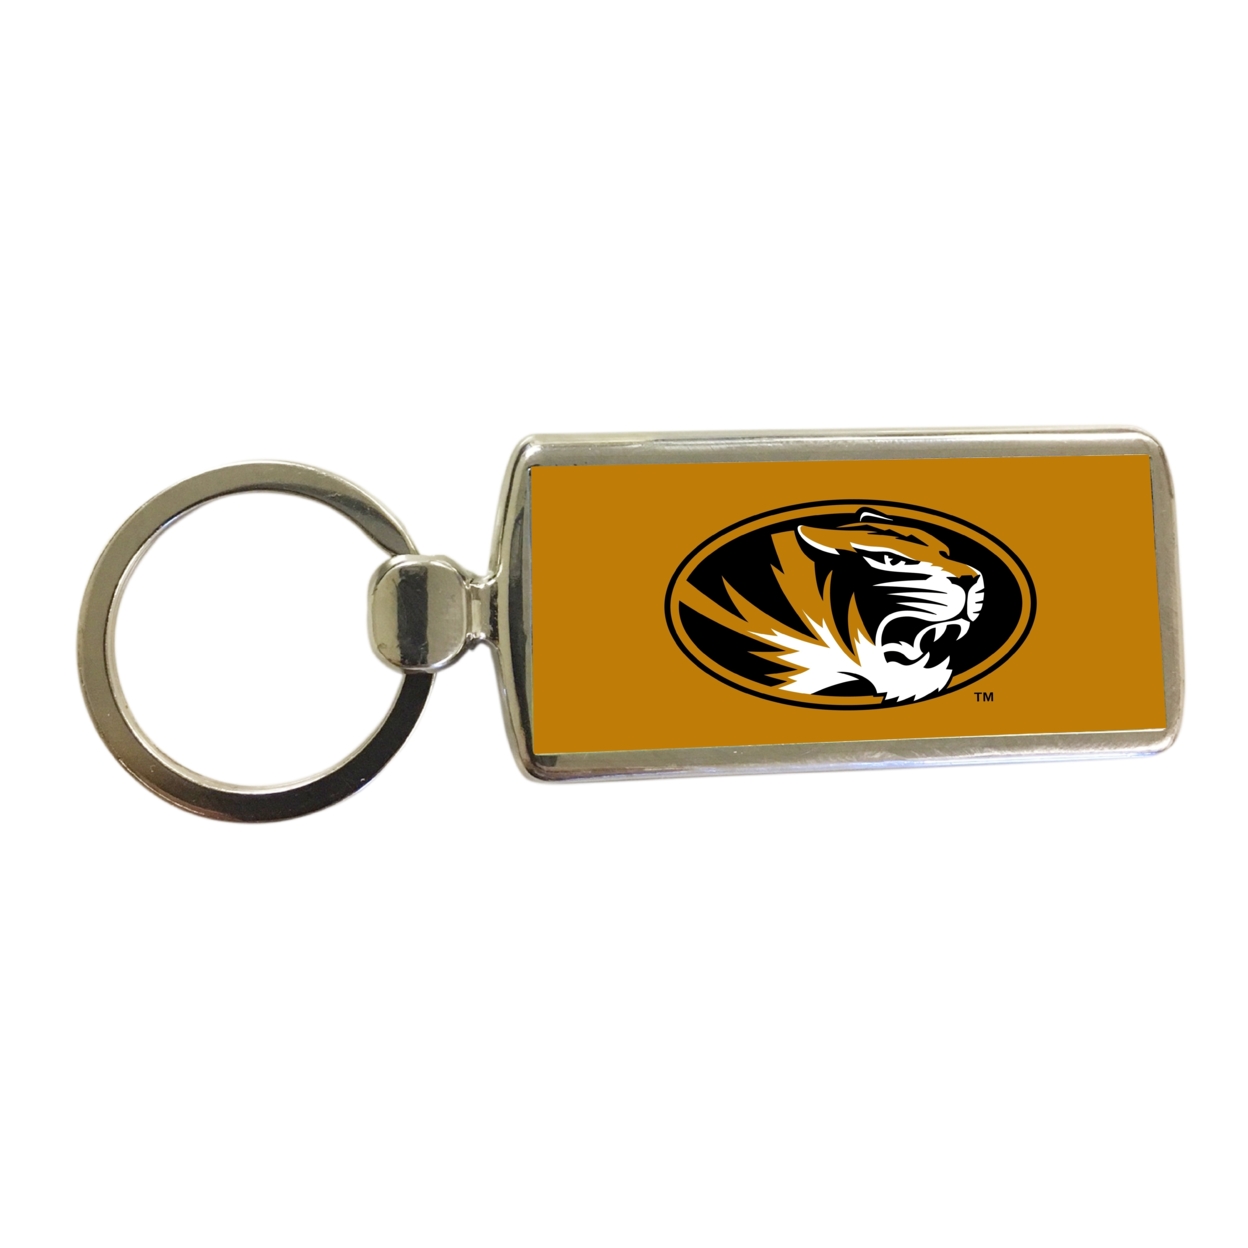 R And R Imports Missouri Tigers Metal Keychain